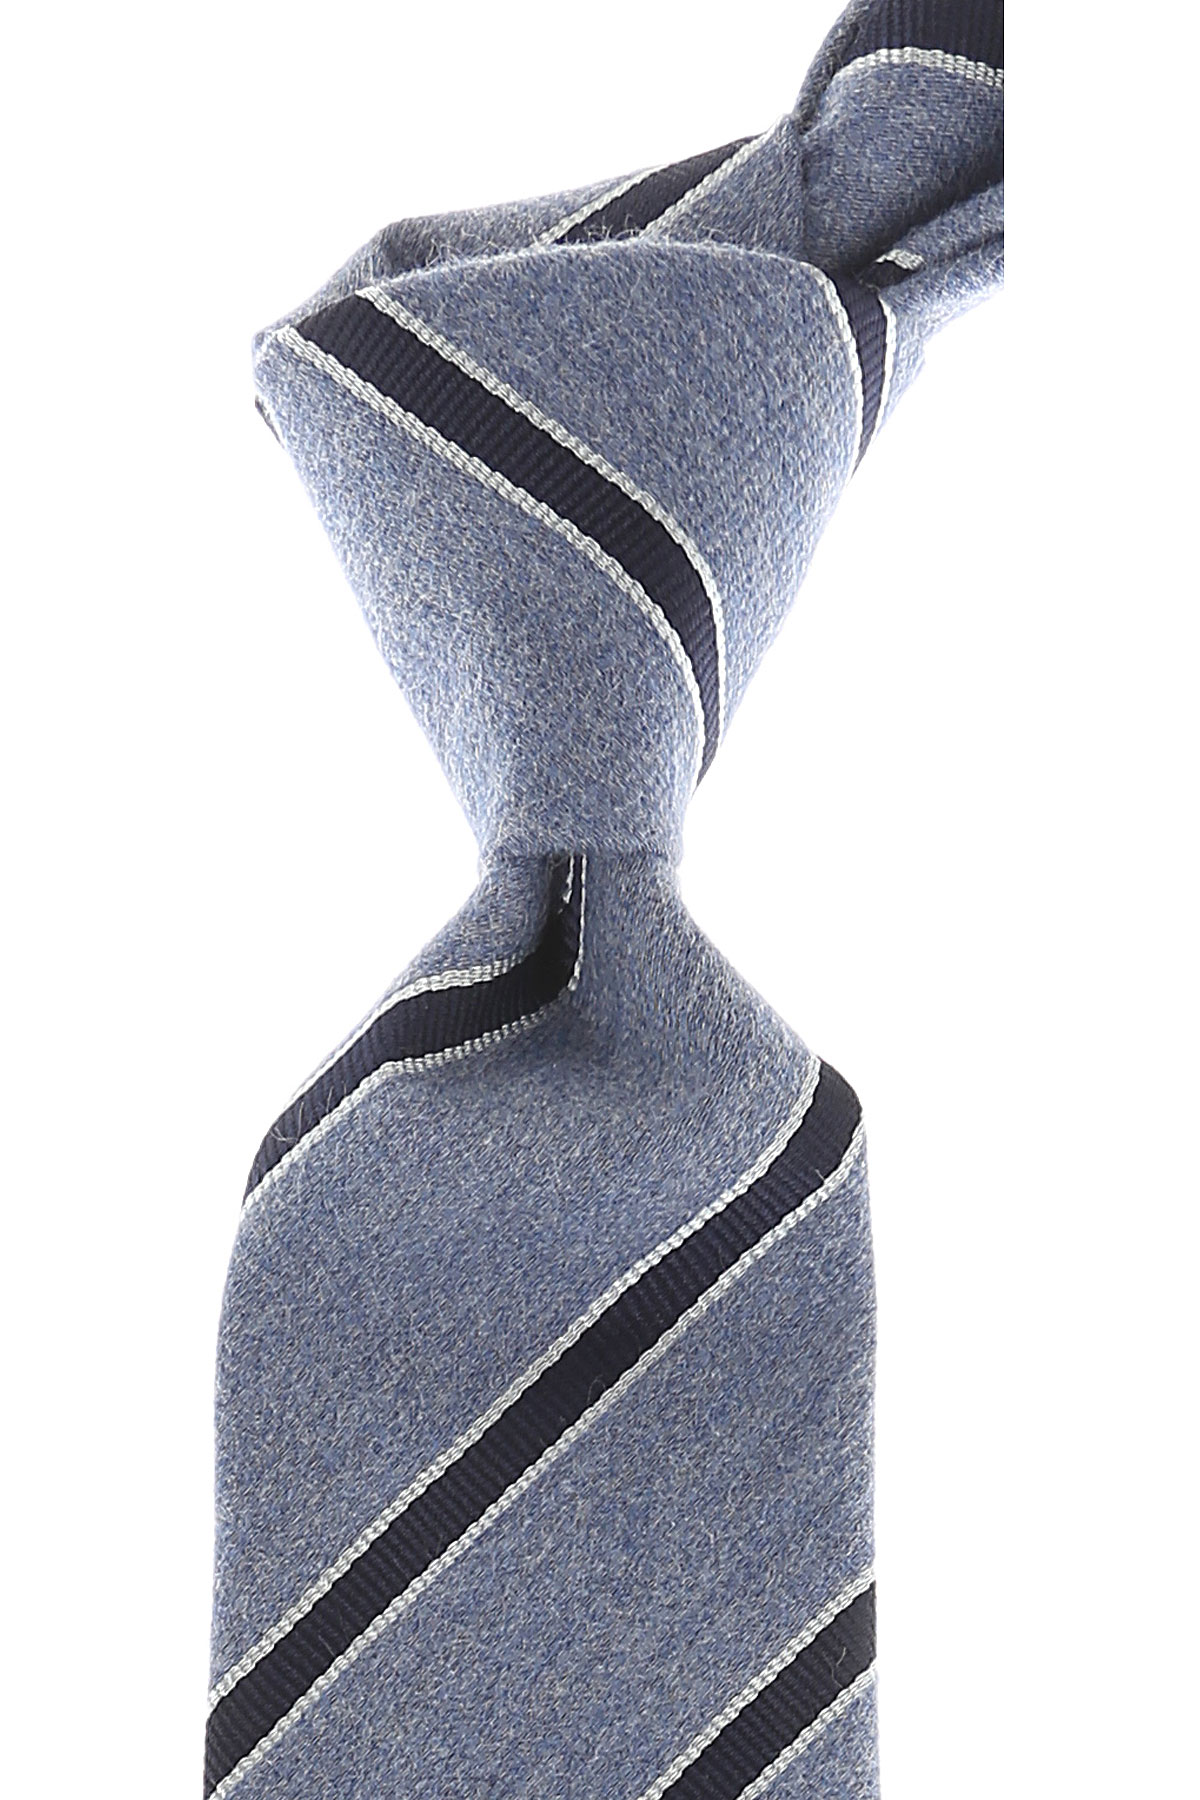 Cravates Kenzo , Mélange bleu clair ciel, Coton, 2017